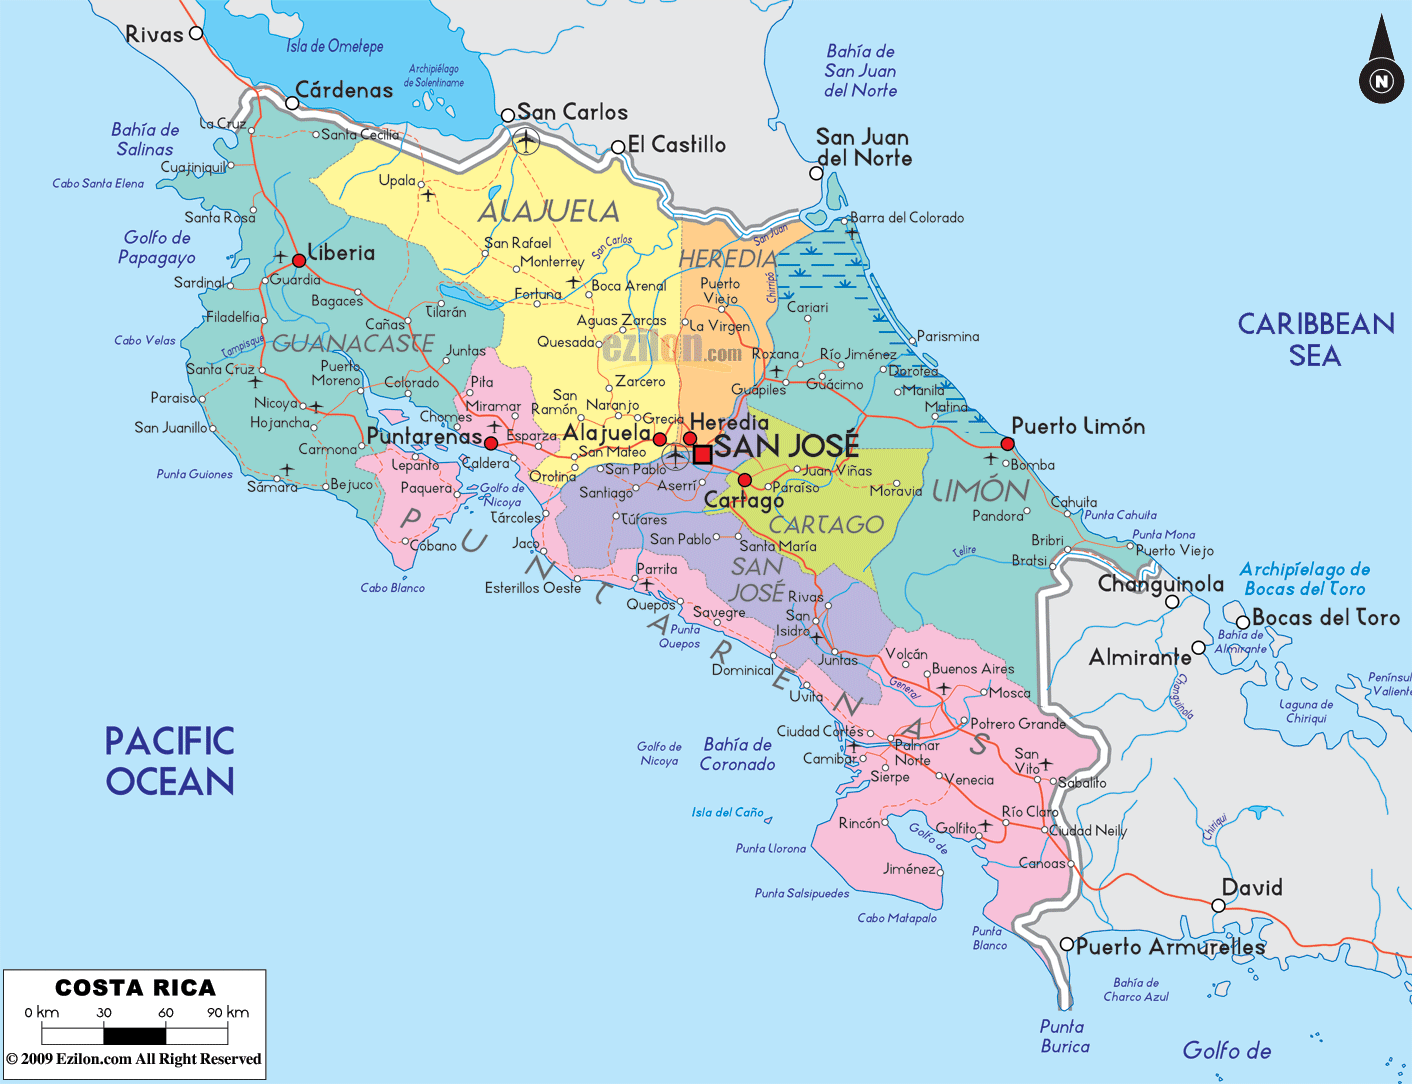 Mapas Geográficos da Costa Rica - Fox Press™